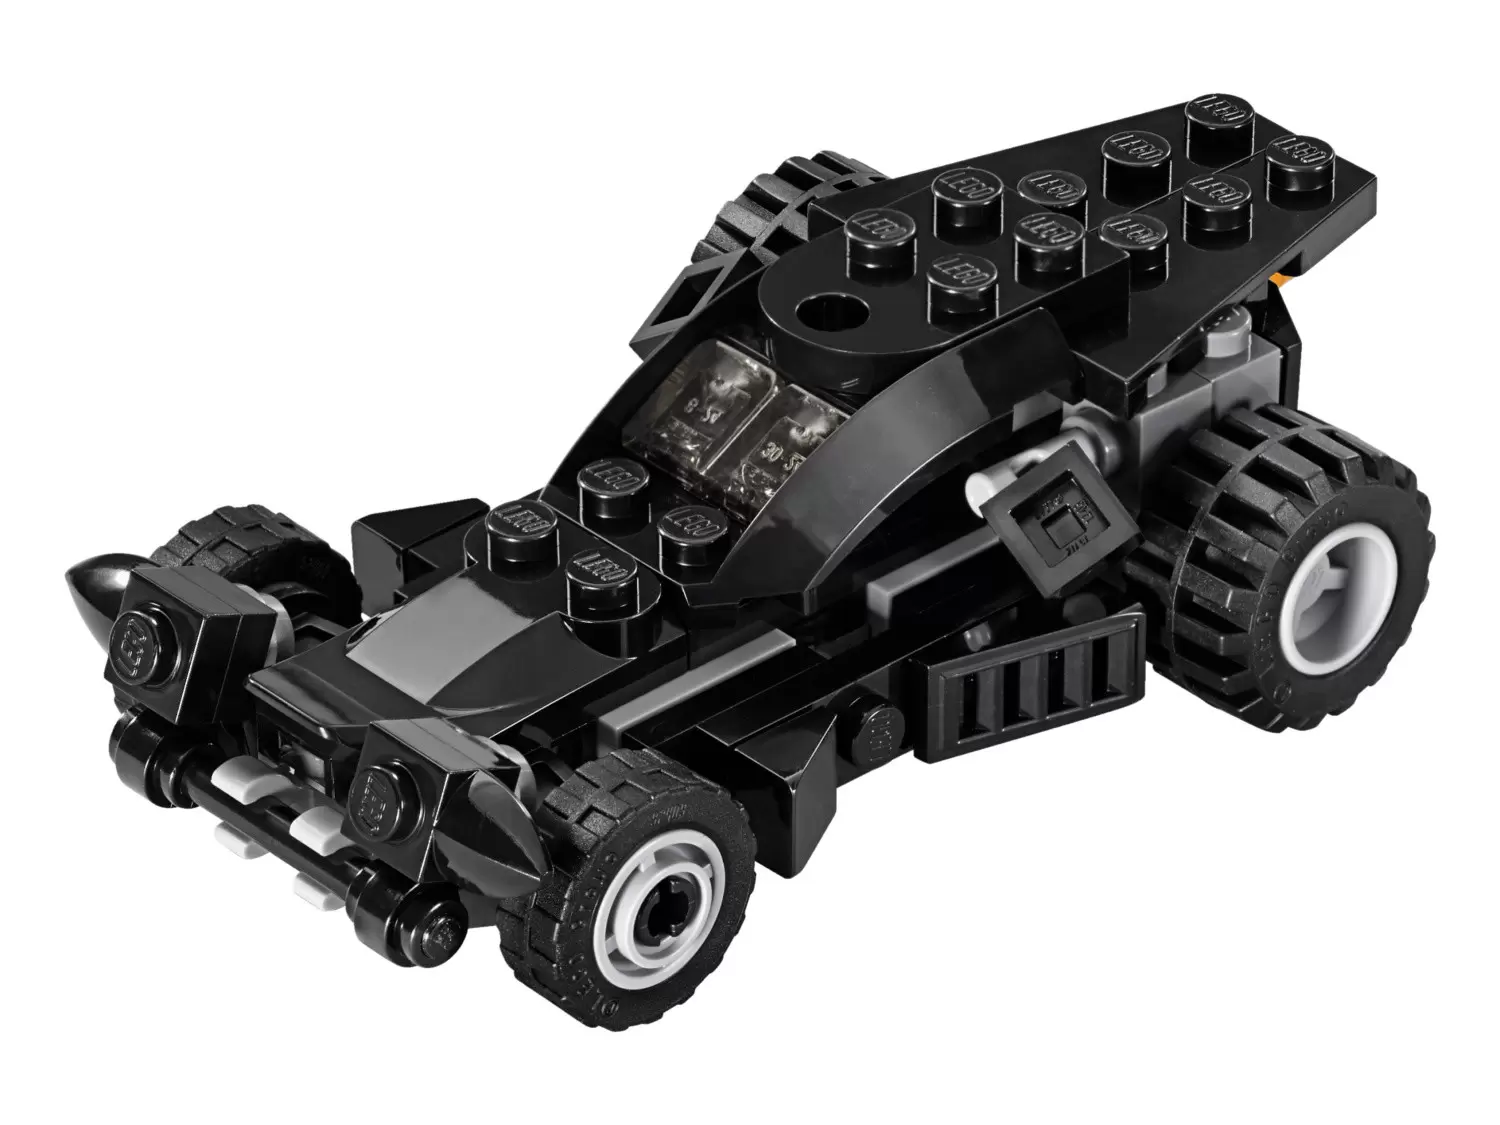 LEGO DC Comics Super Heroes - The Batmobile